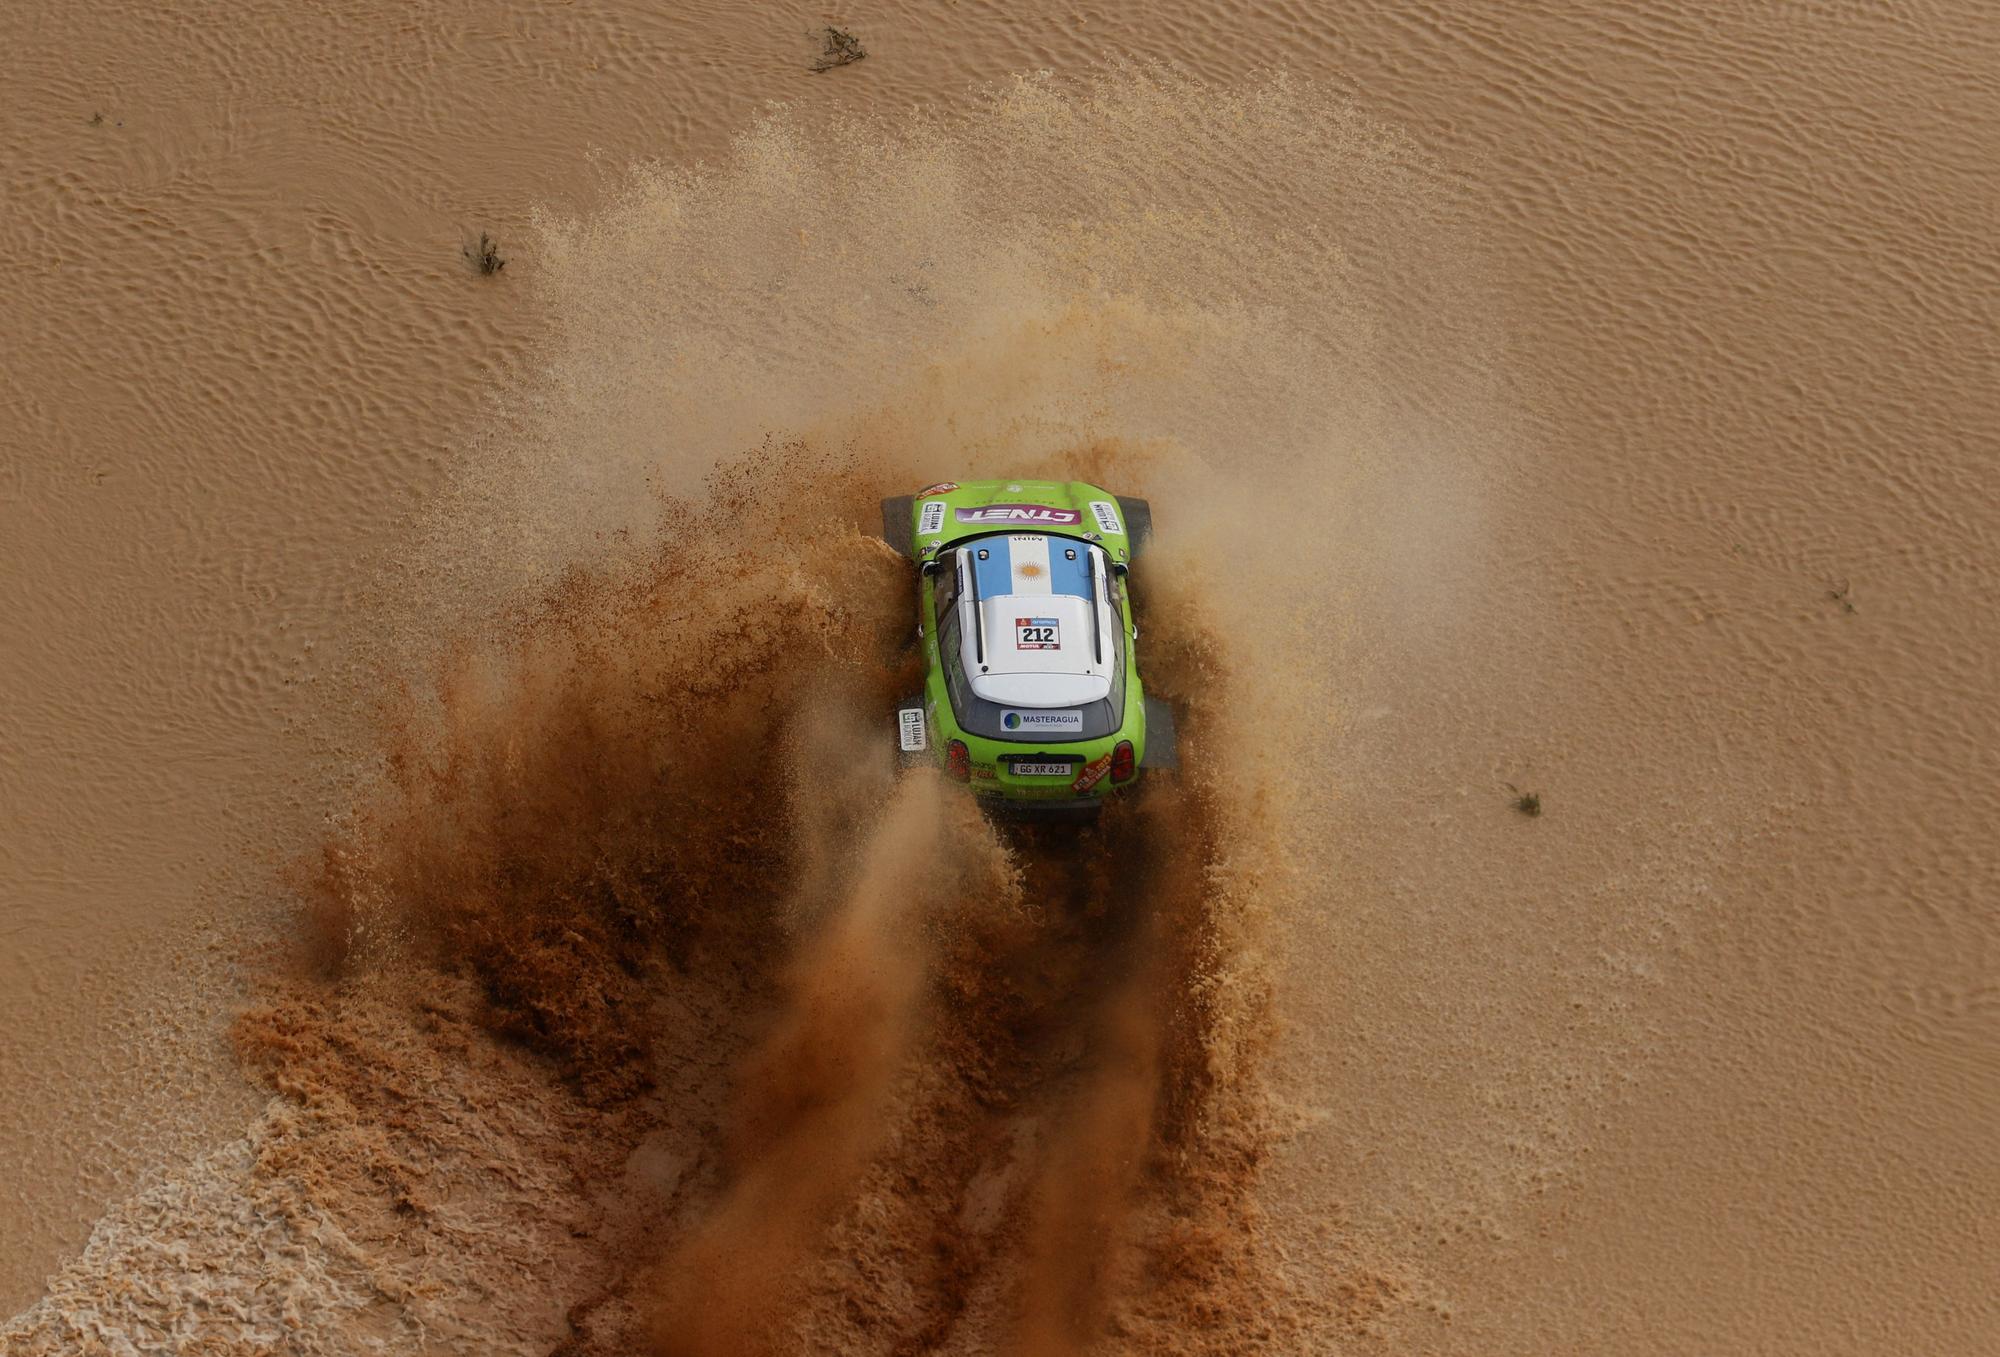 Dakar Rally (163386656).jpg